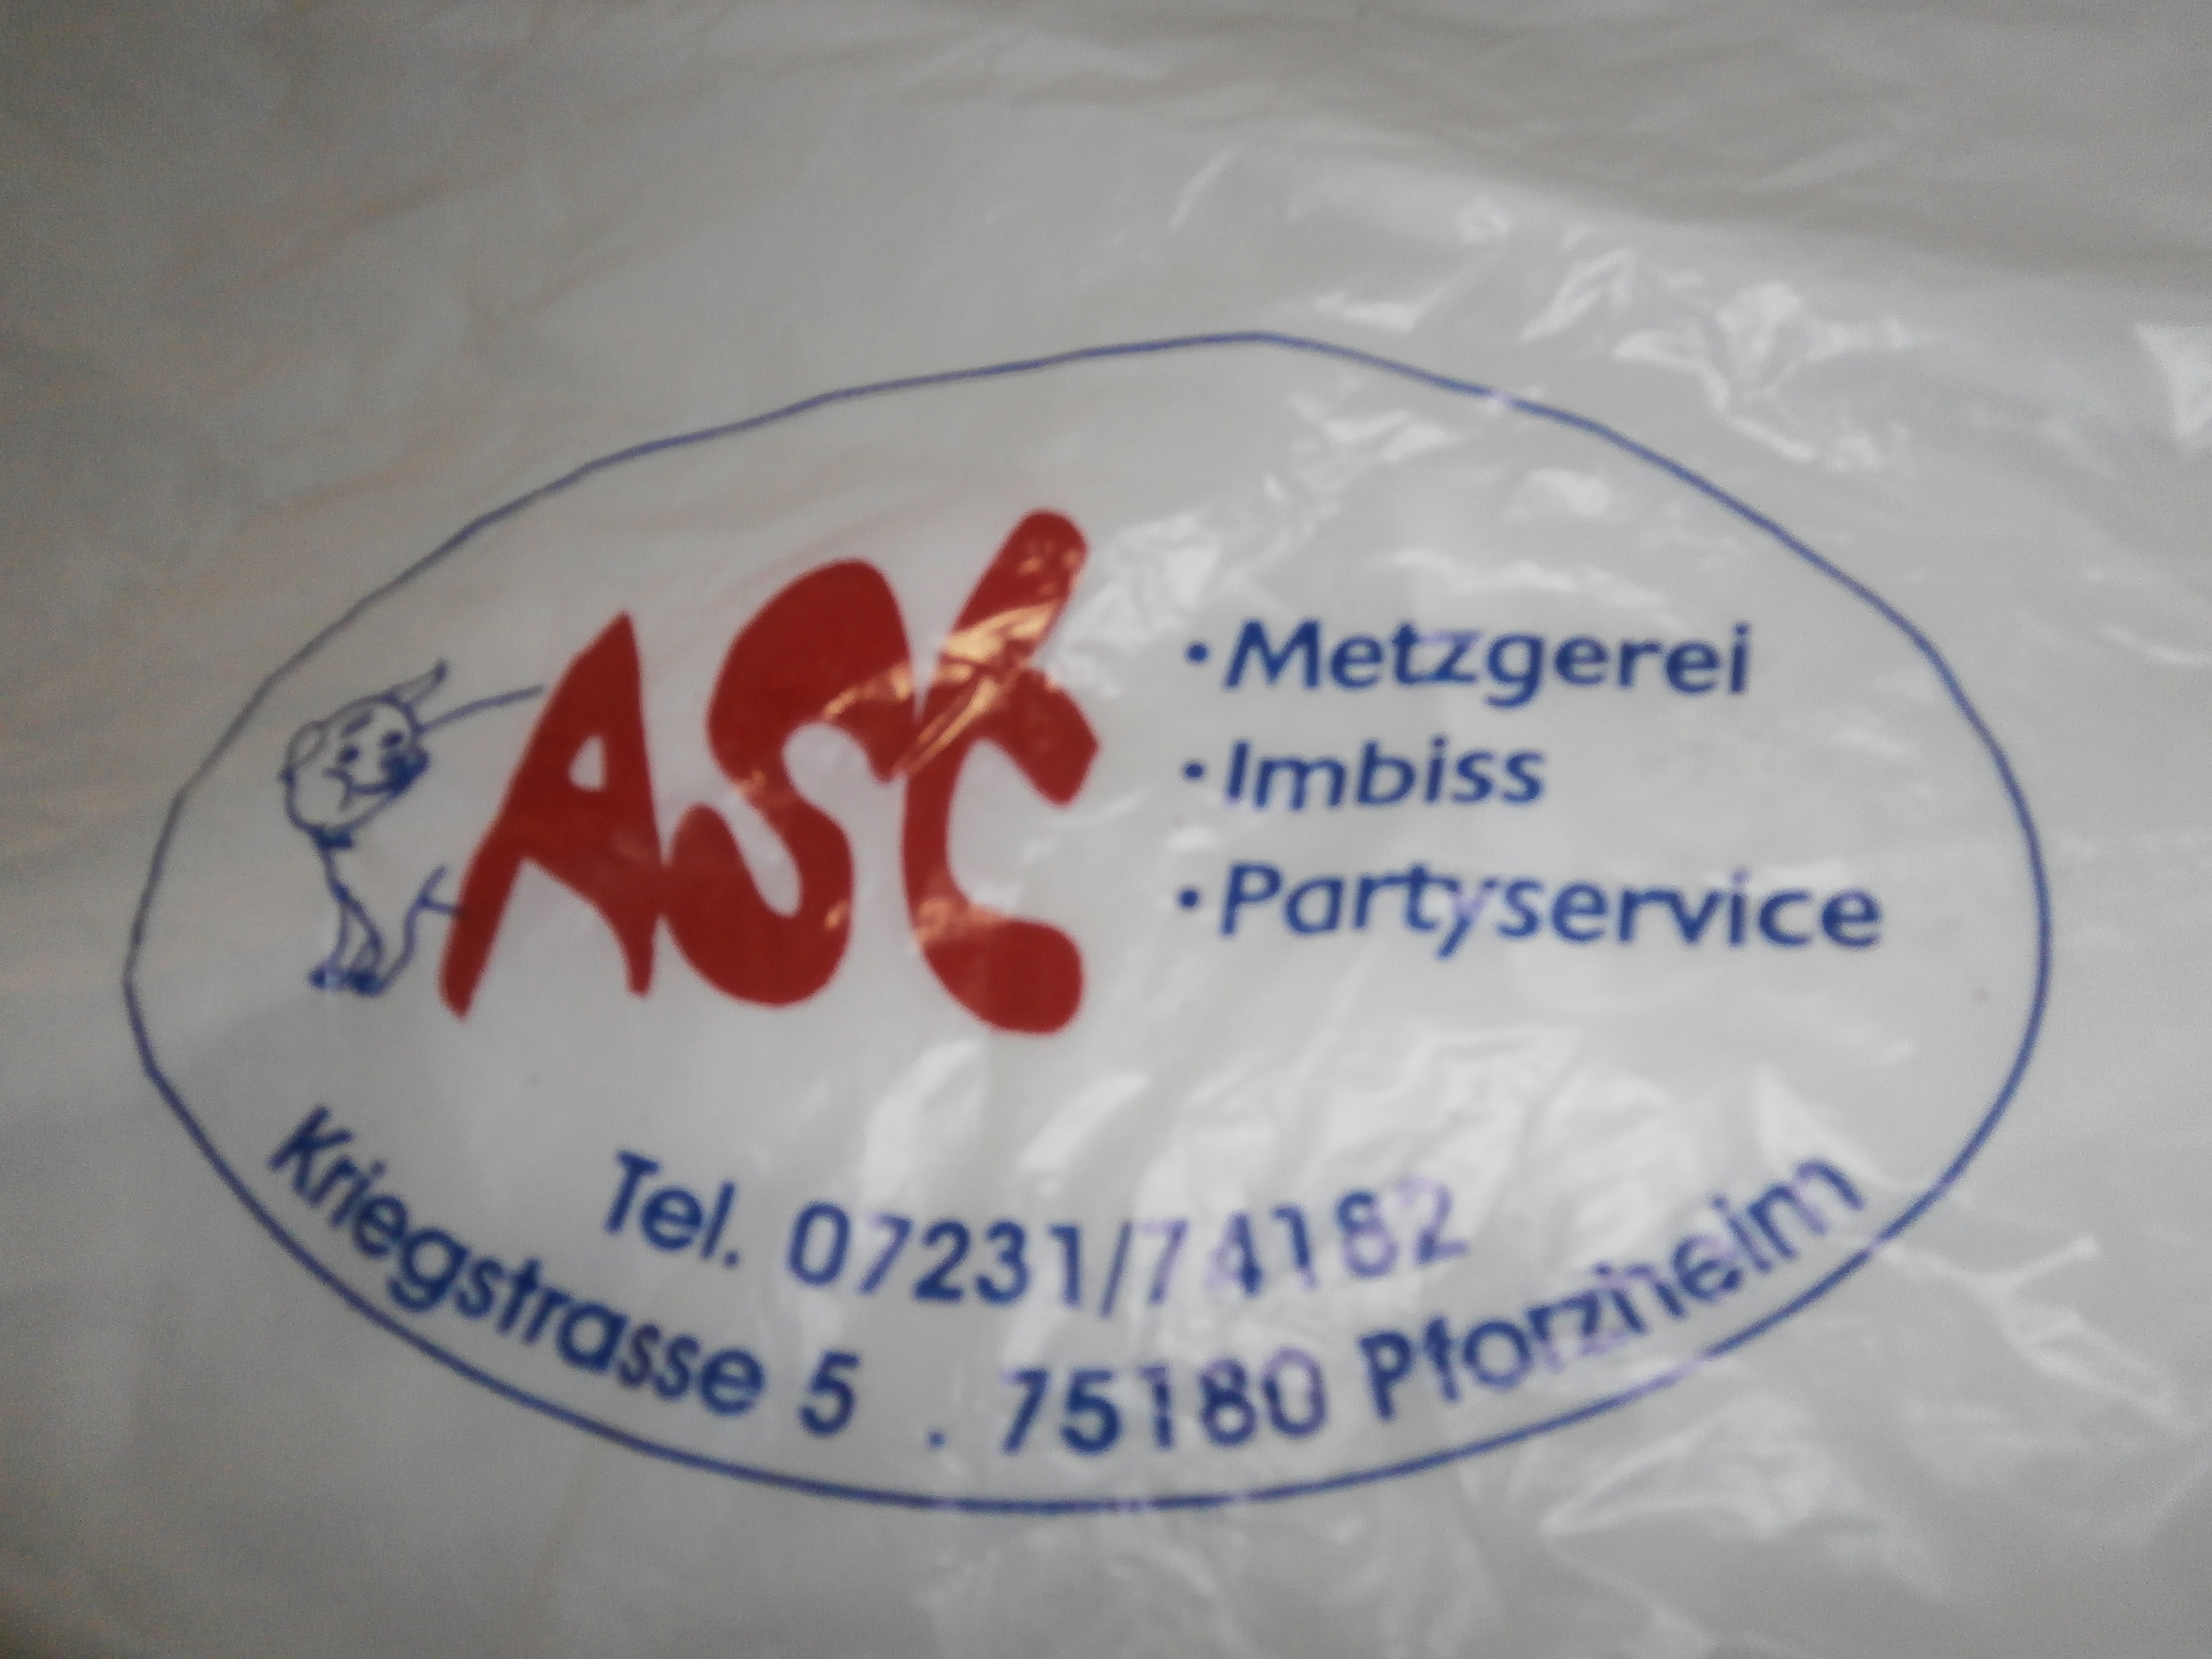 Bild 3 Ast Metzgerei GmbH in Pforzheim